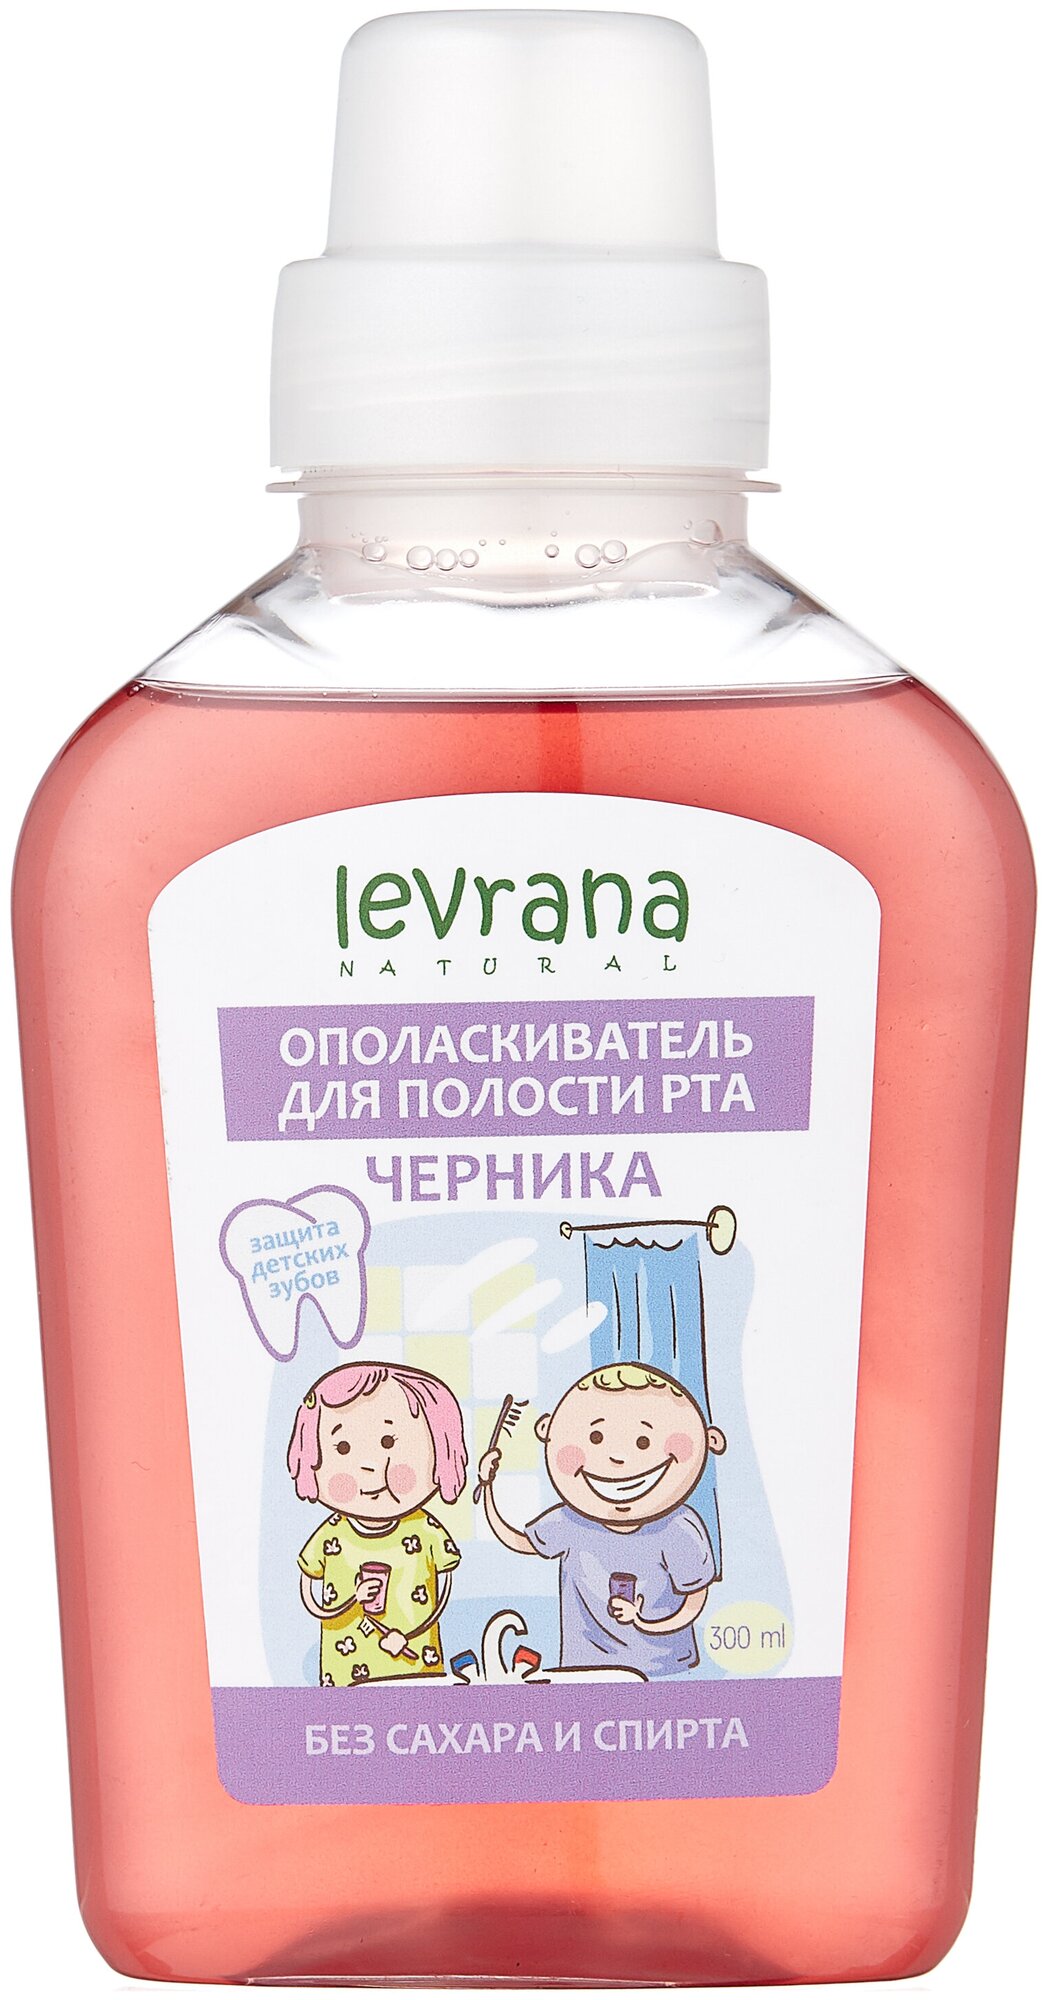 Ополаскиватель для полости рта детский "Черника", Levrana